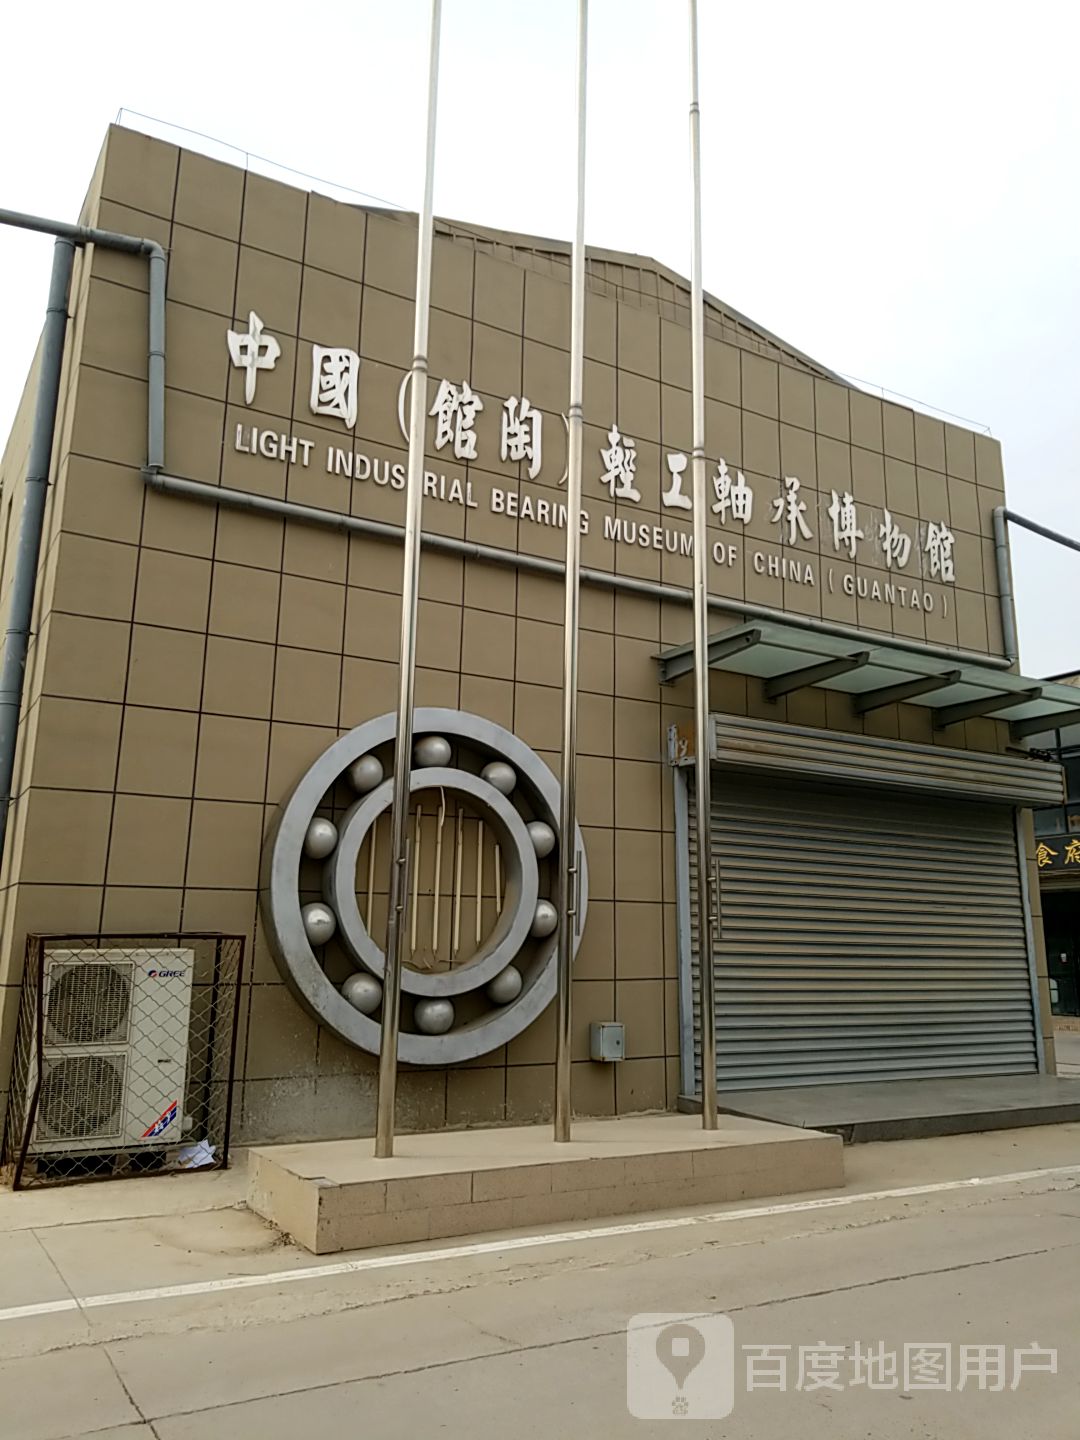 中国(馆陶)轻工轴承博物馆